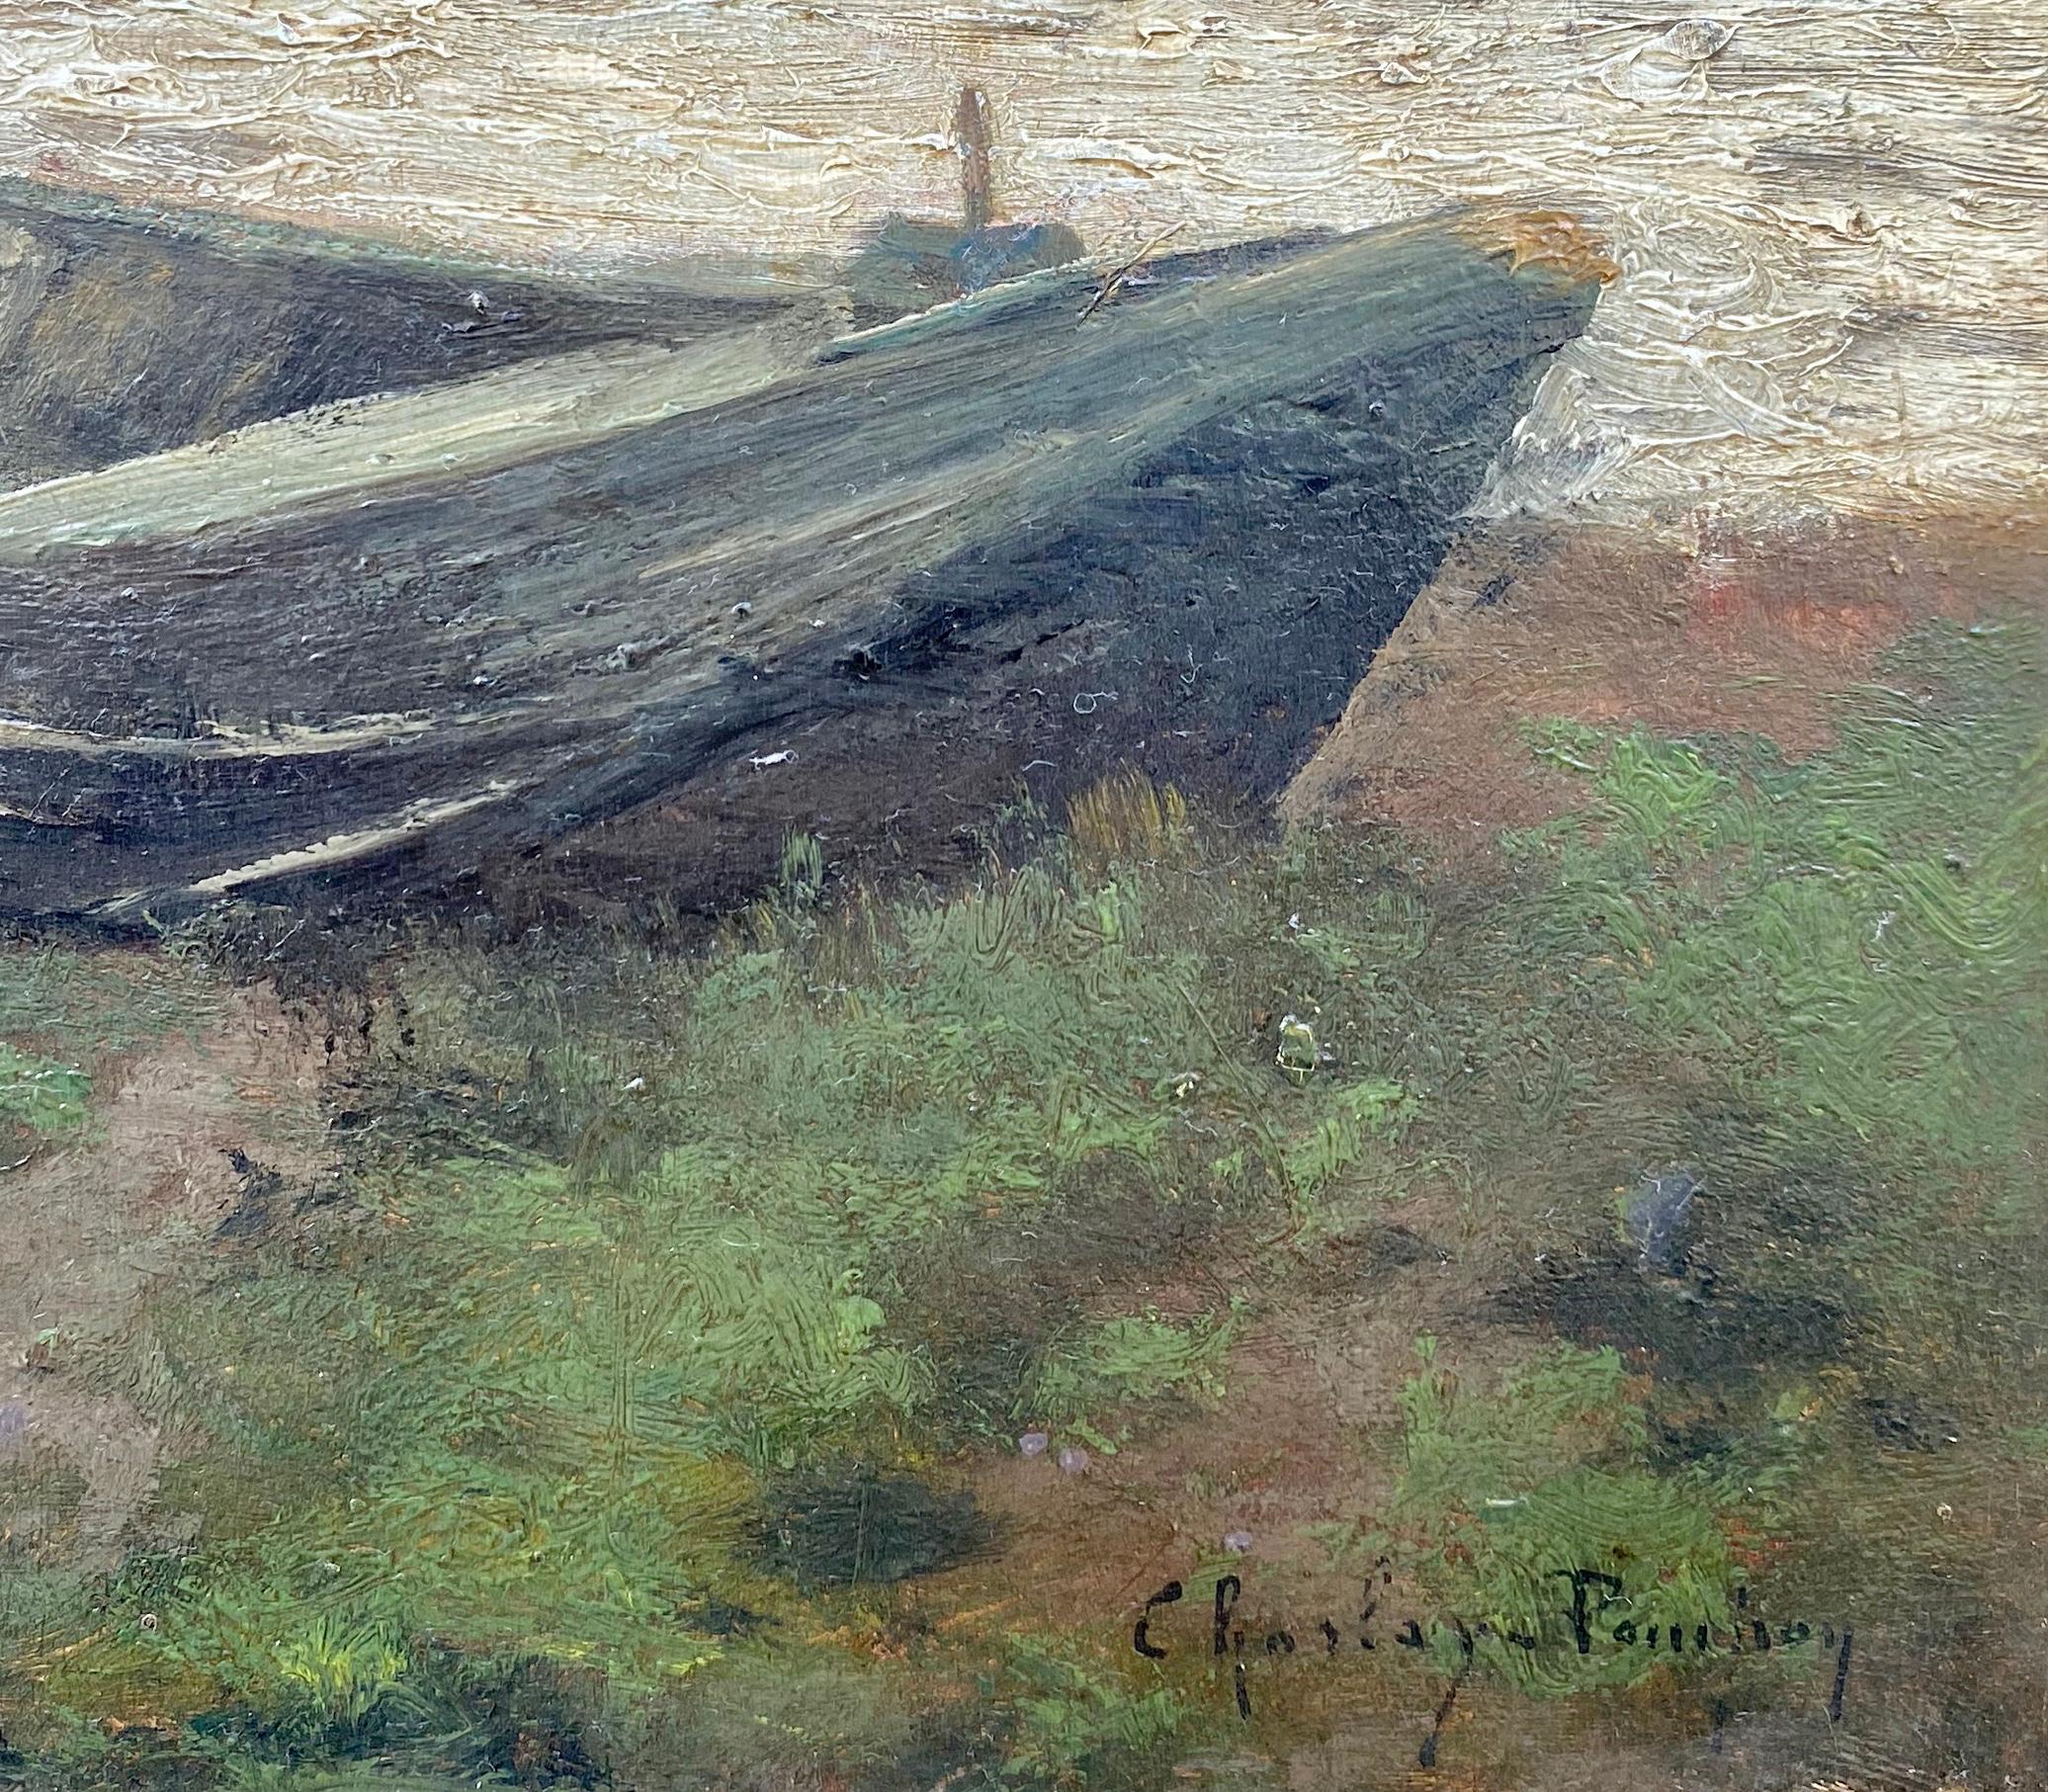 Nach dem Sturm, der blaue Kanus: Impressionistische Pleinair-F Flussssszene (Impressionismus), Painting, von Charles Charlay-Pompon